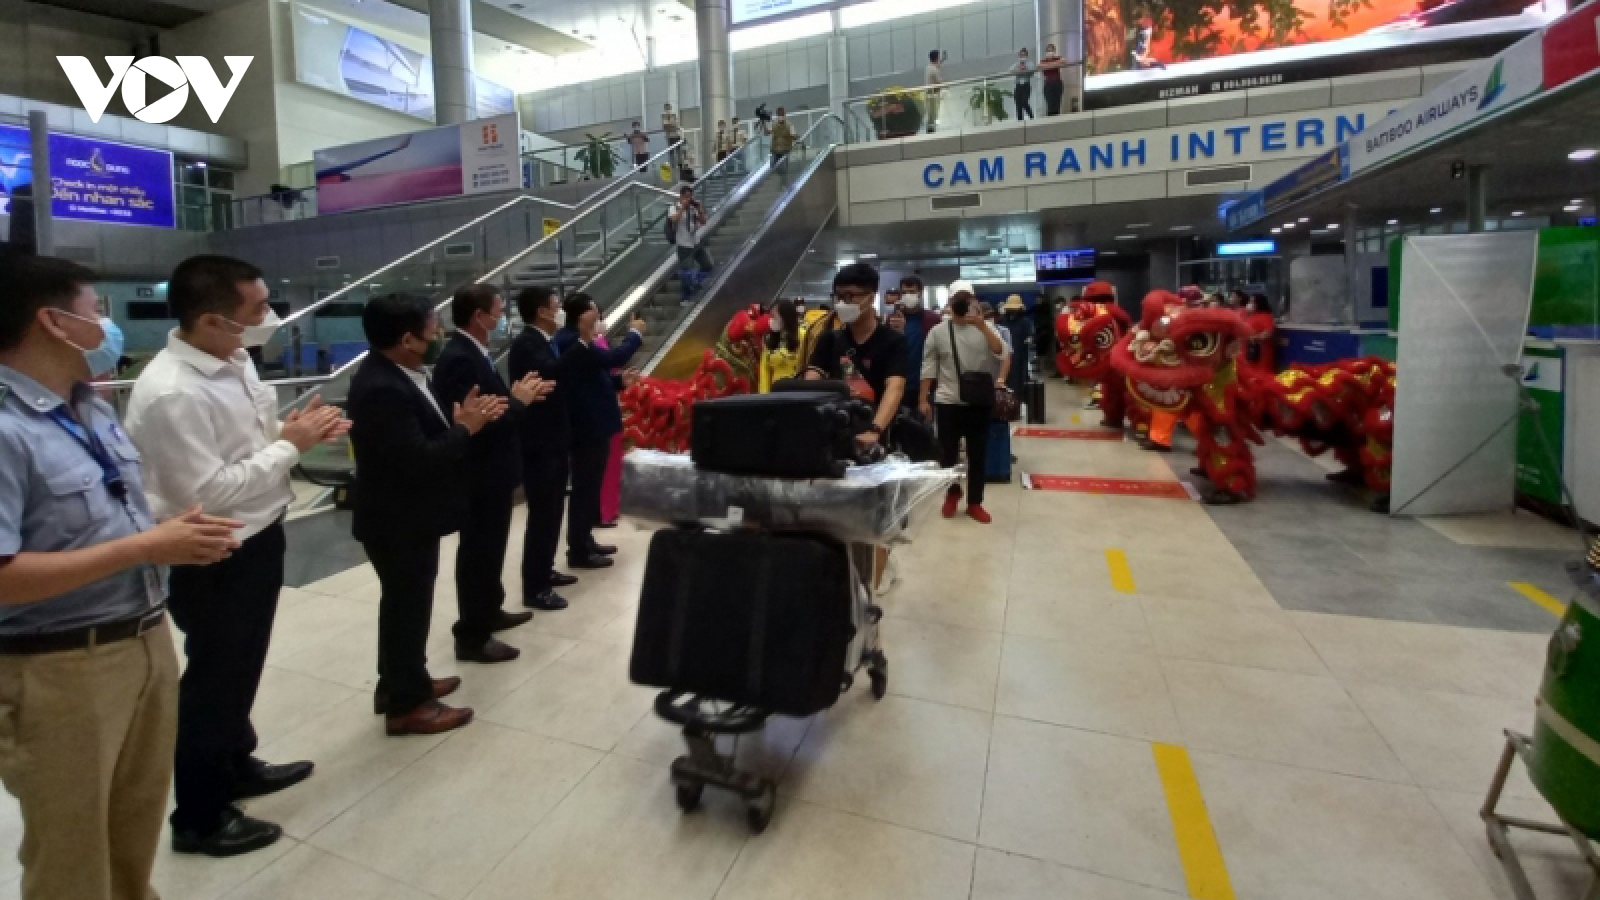 Sân bay Cam Ranh đón chuyến thương mại từ Hàn Quốc đến Khánh Hòa